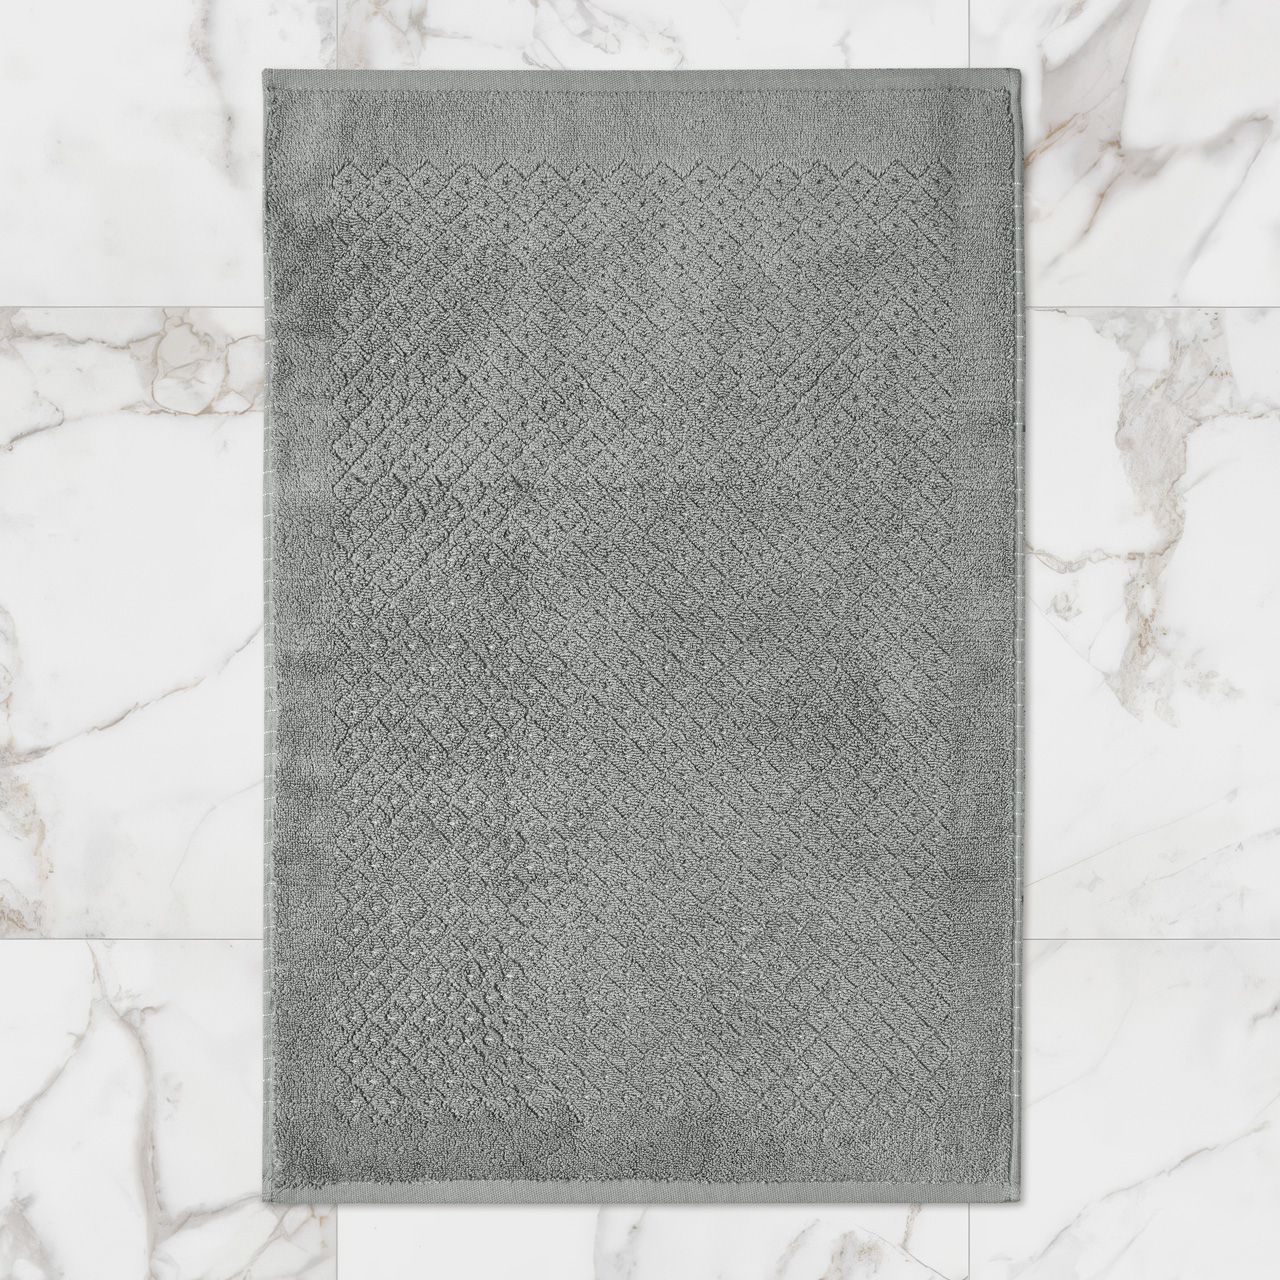 Коврик для ванной Эколайн цвет: серый (50х70 см), размер 50х70 см ecx976765 Коврик для ванной Эколайн цвет: серый (50х70 см) - фото 1